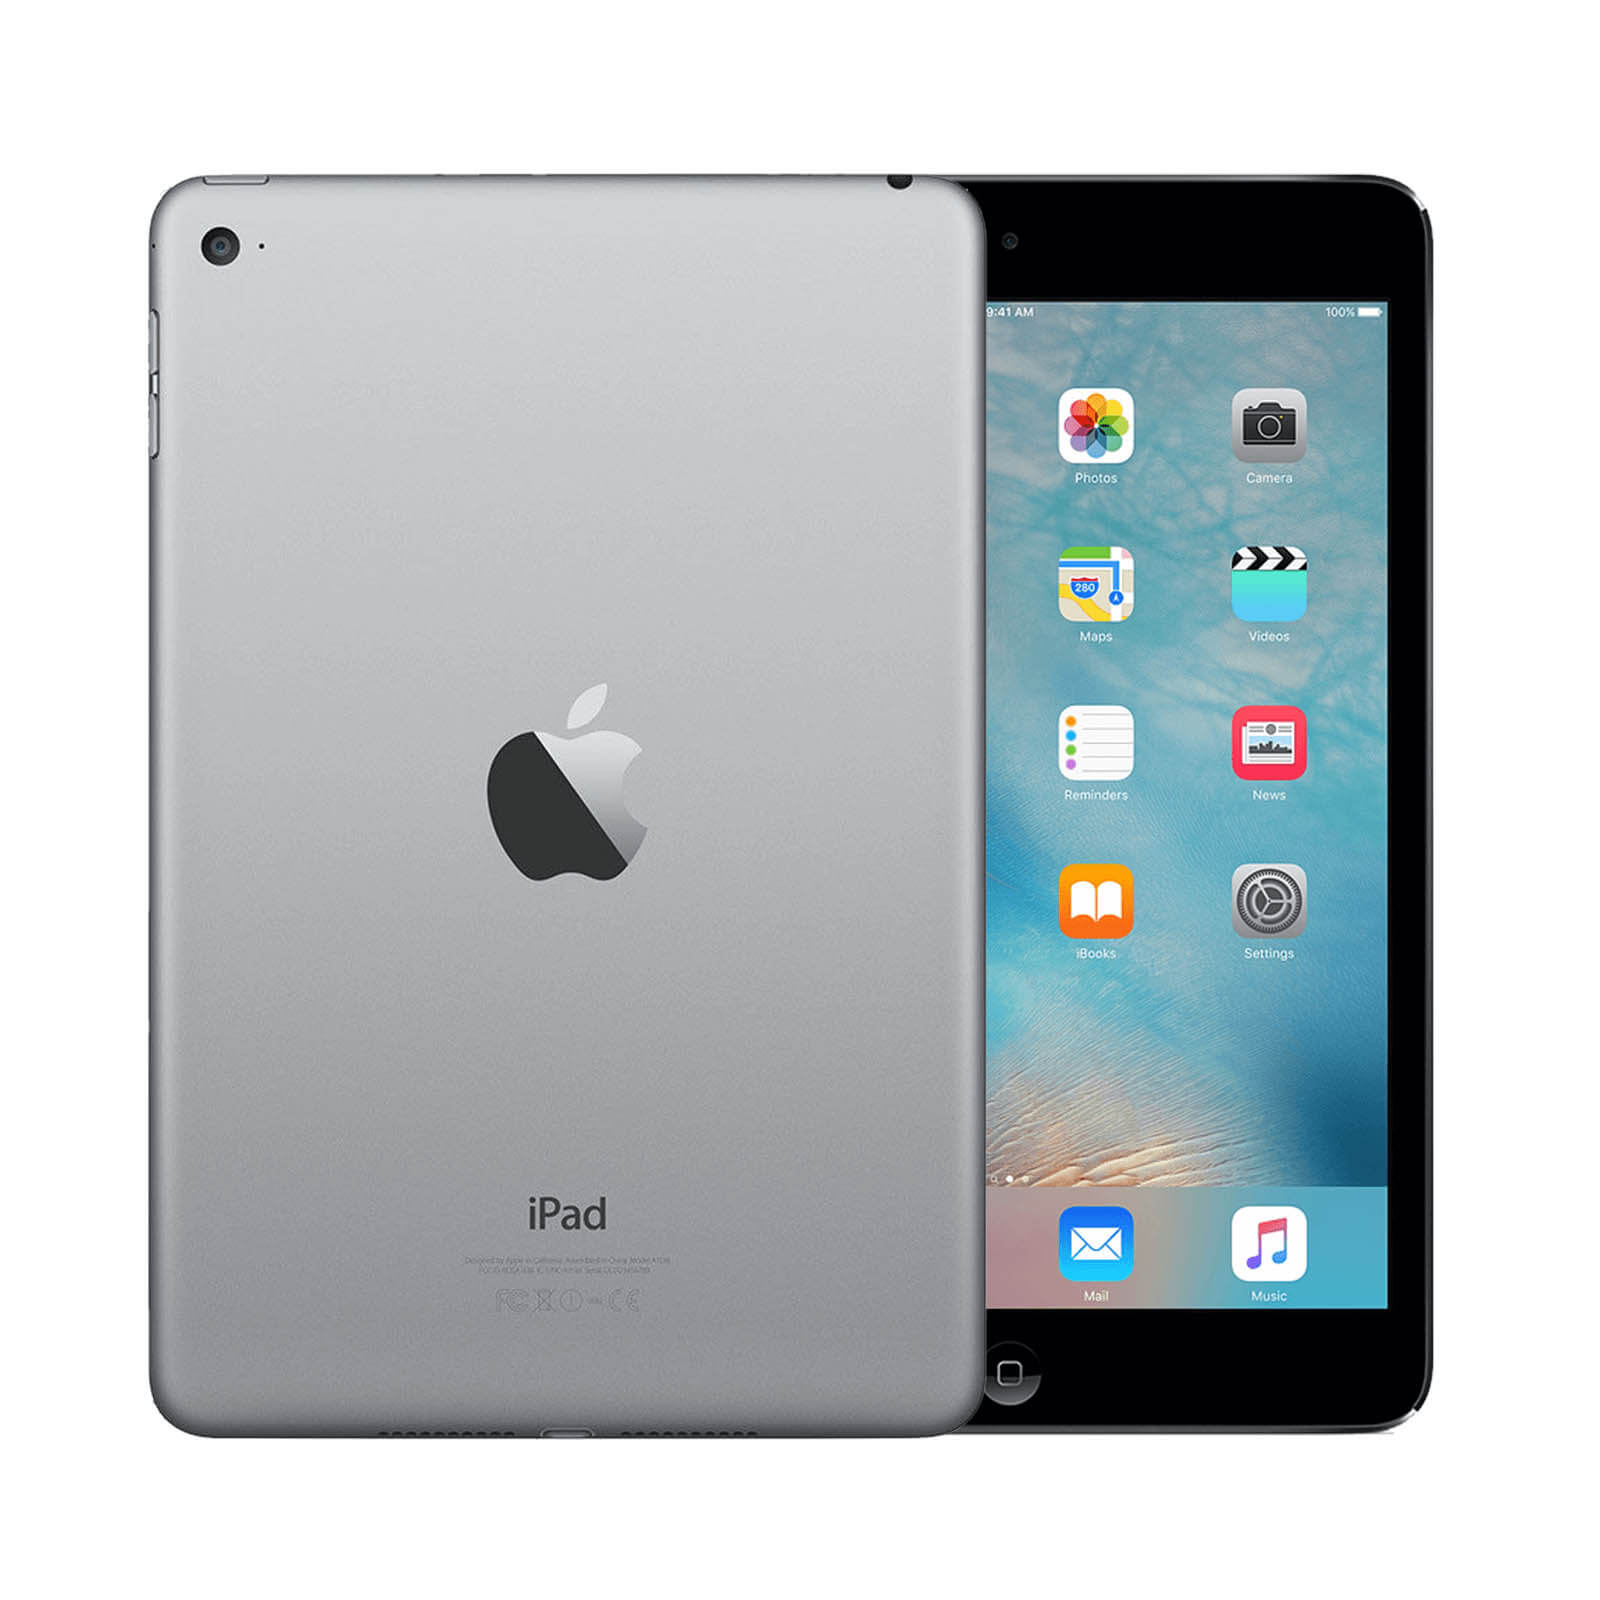 Apple iPad Mini 4 32GB Space Grey WiFi - Very Good 32GB Space Grey Very Good